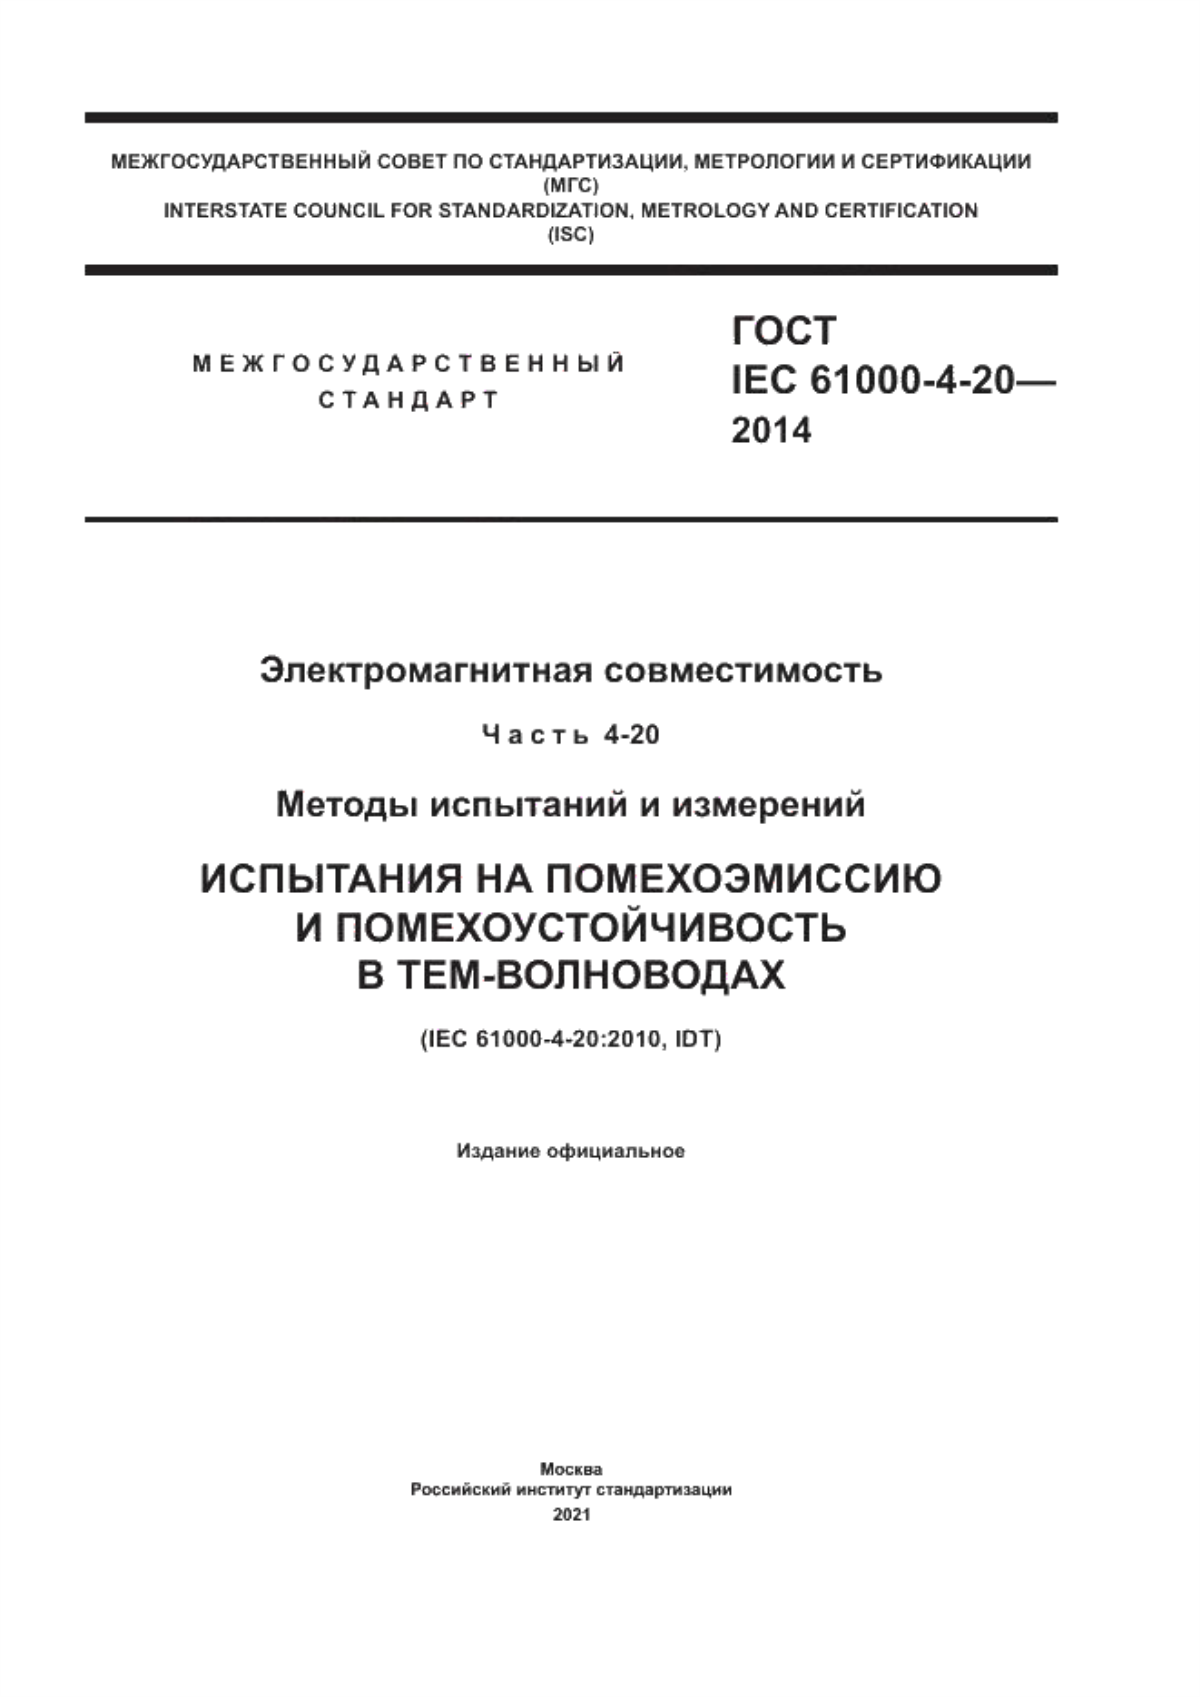 ГОСТ IEC 61000-4-20-2014 Электромагнитная совместимость. Часть 4-20. Методы испытаний и измерений. Испытания на помехоэмиссию и помехоустойчивость в ТЕМ-волноводах